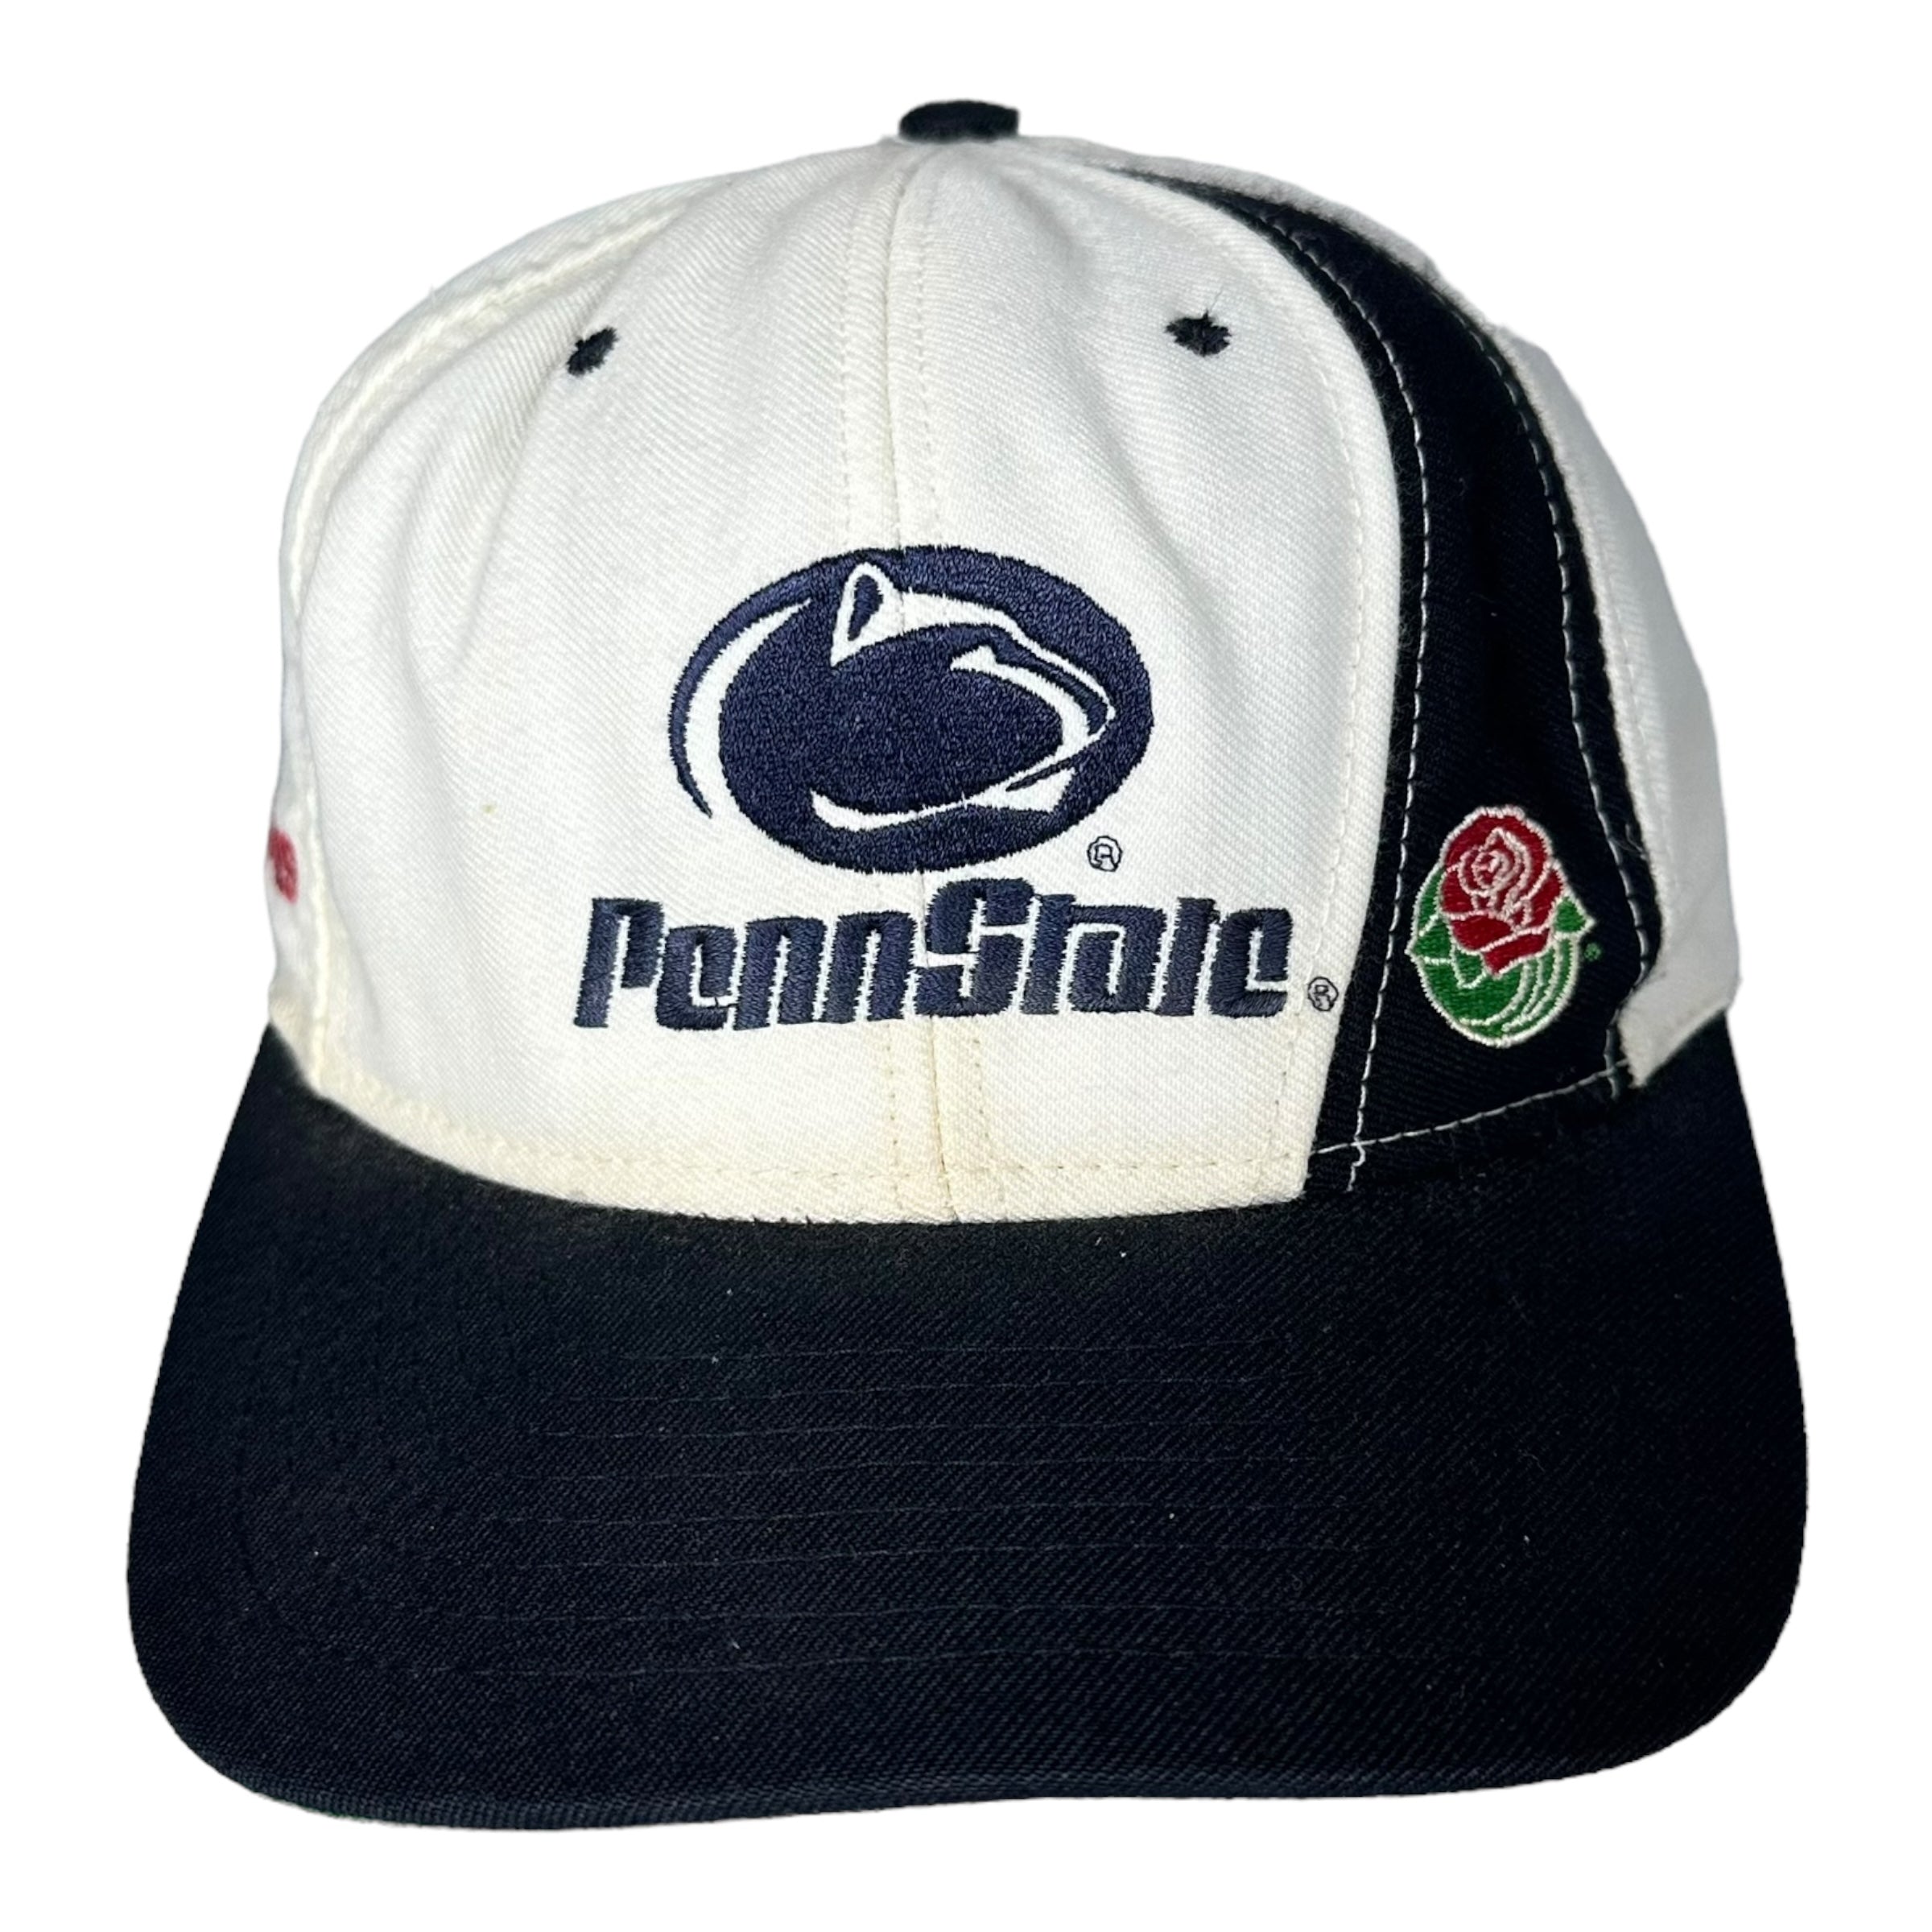 Vintage Penn State Snapback 1990s